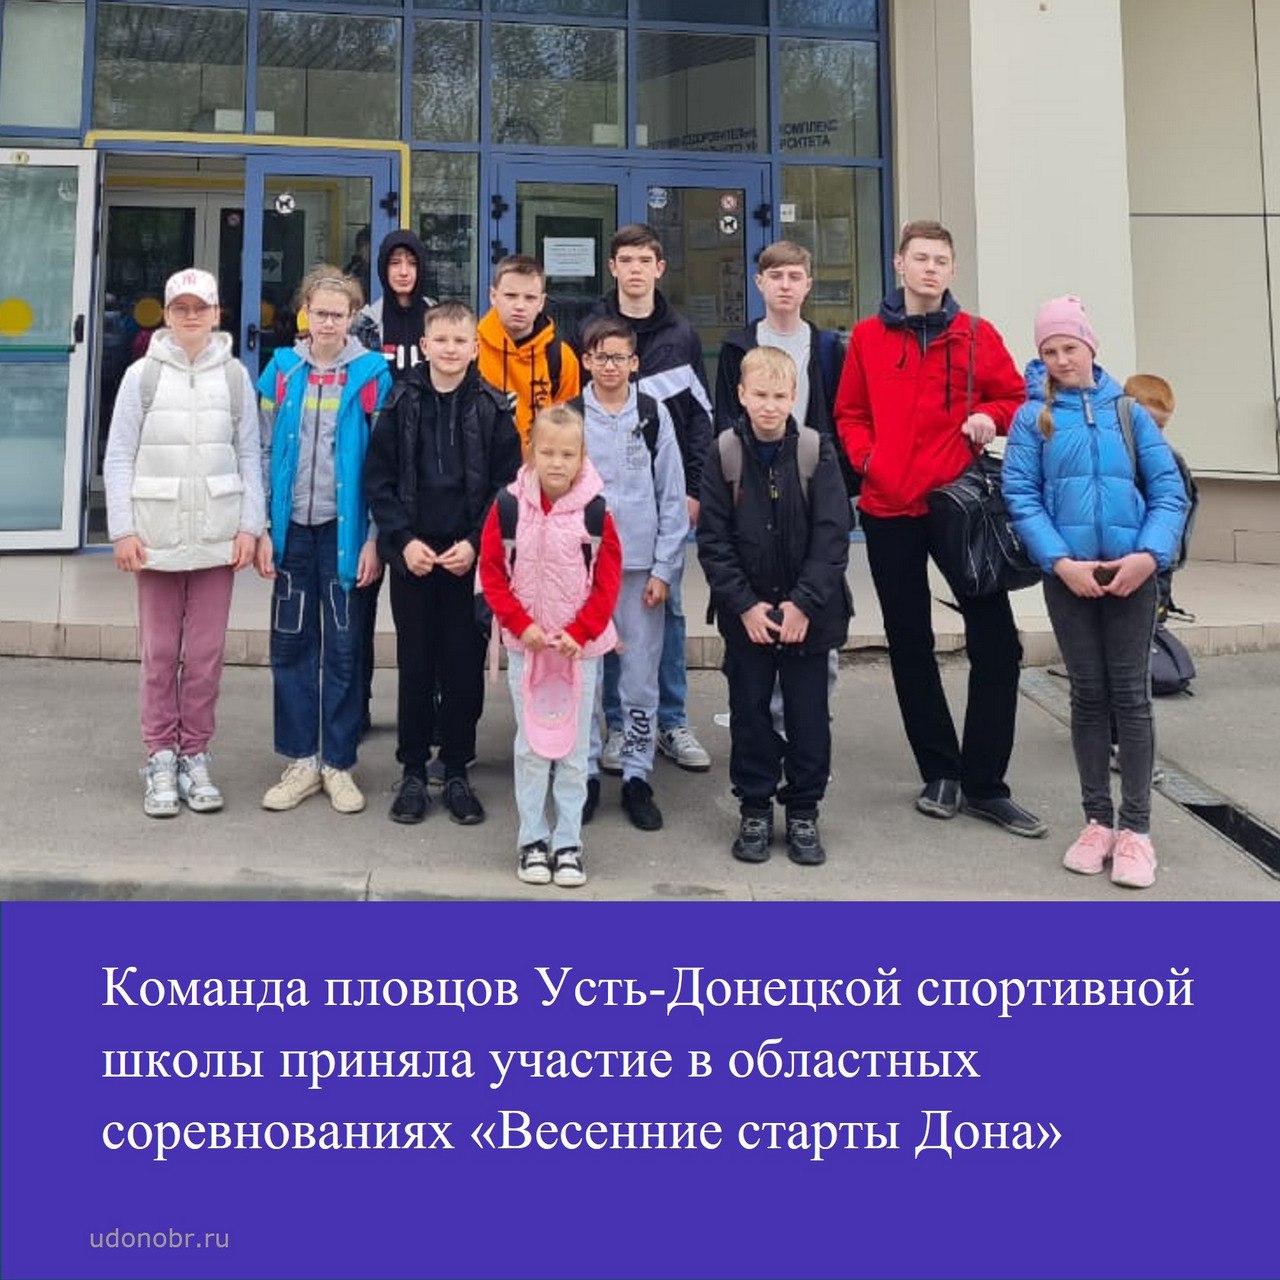 Команда пловцов Усть-Донецкой спортивной школы приняла участие в областных соревнованиях «Весенние старты Дона»